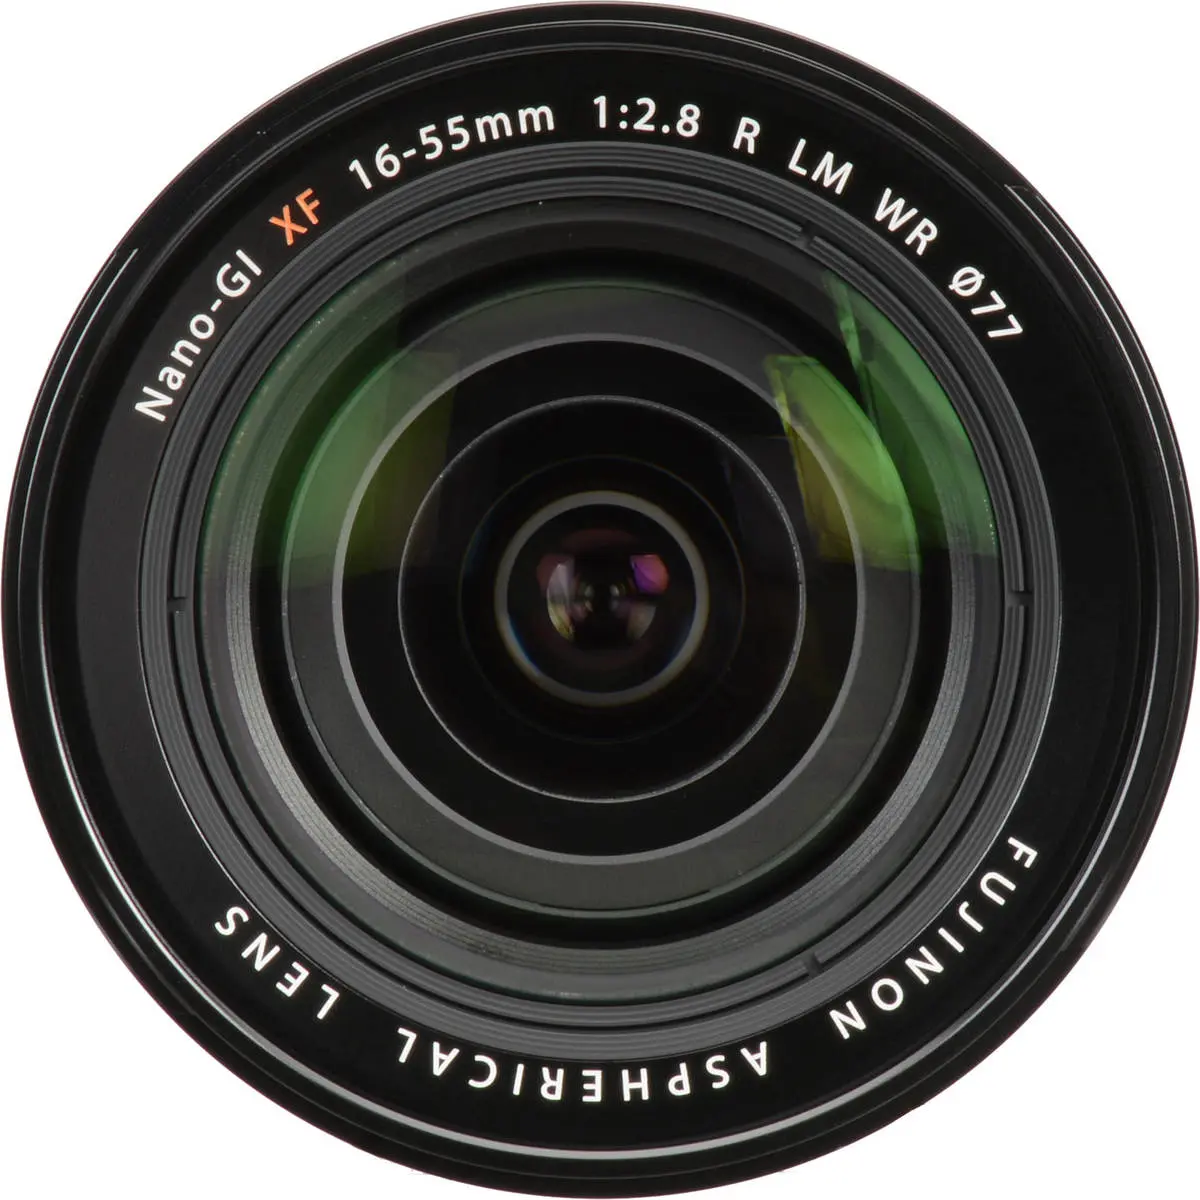 6. Fujifilm FUJINON XF 16-55mm F2.8 R LM WR Lens